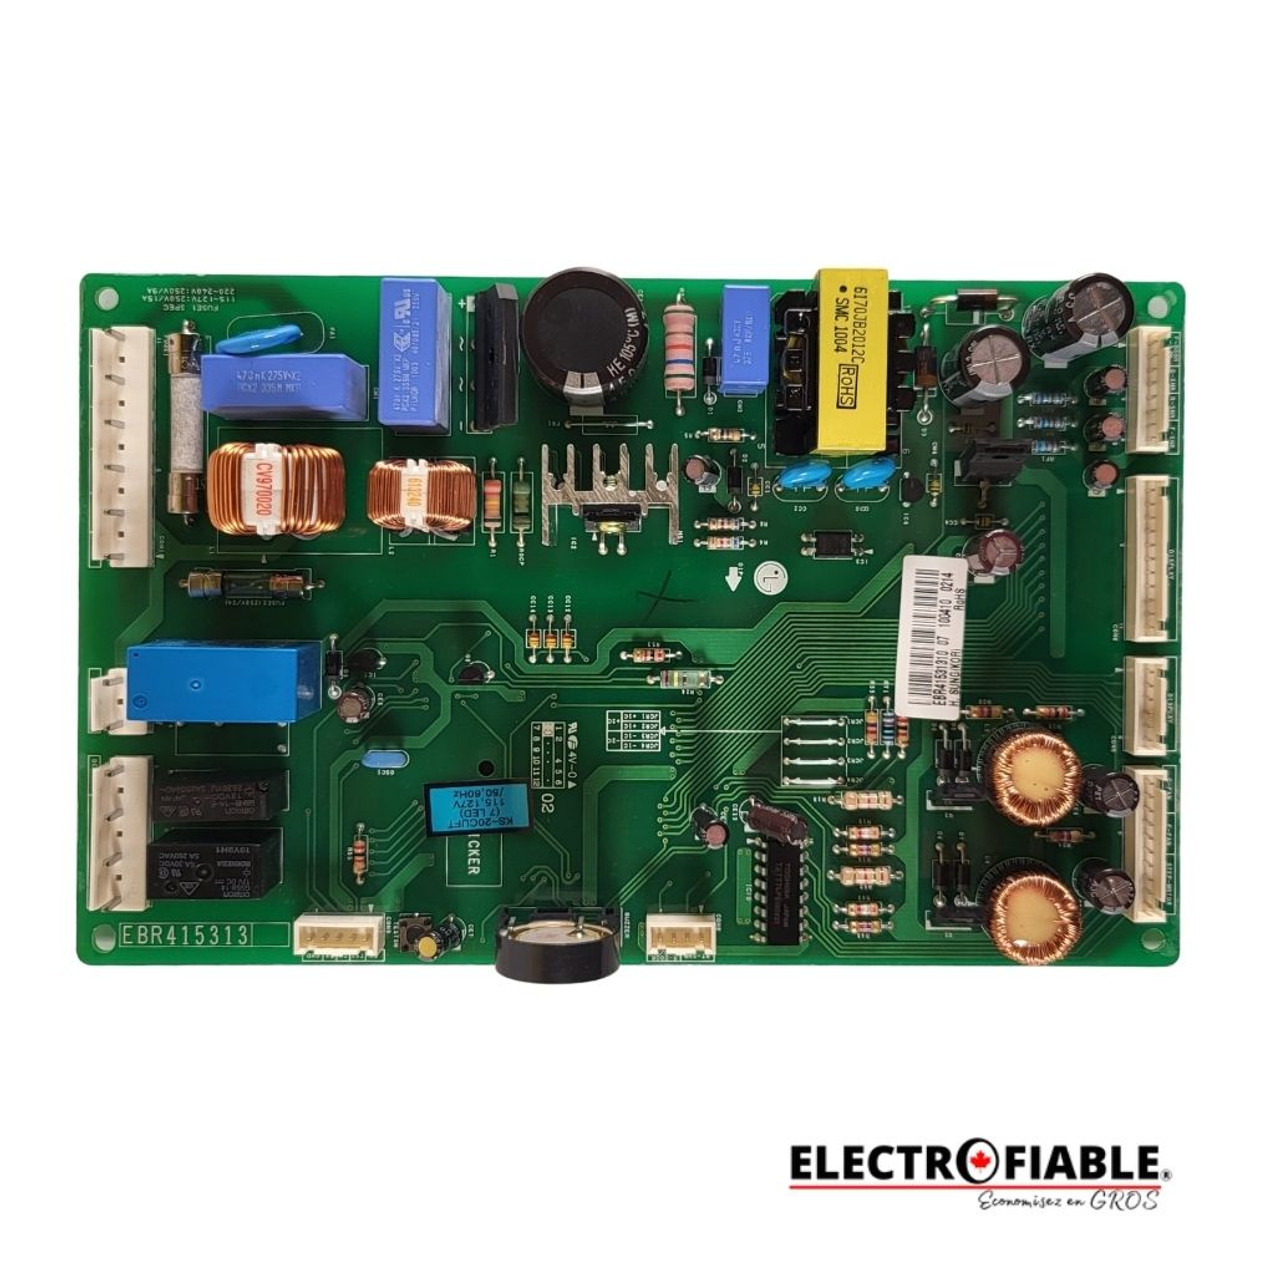 EBR41531310 Control board for LG refrigerator